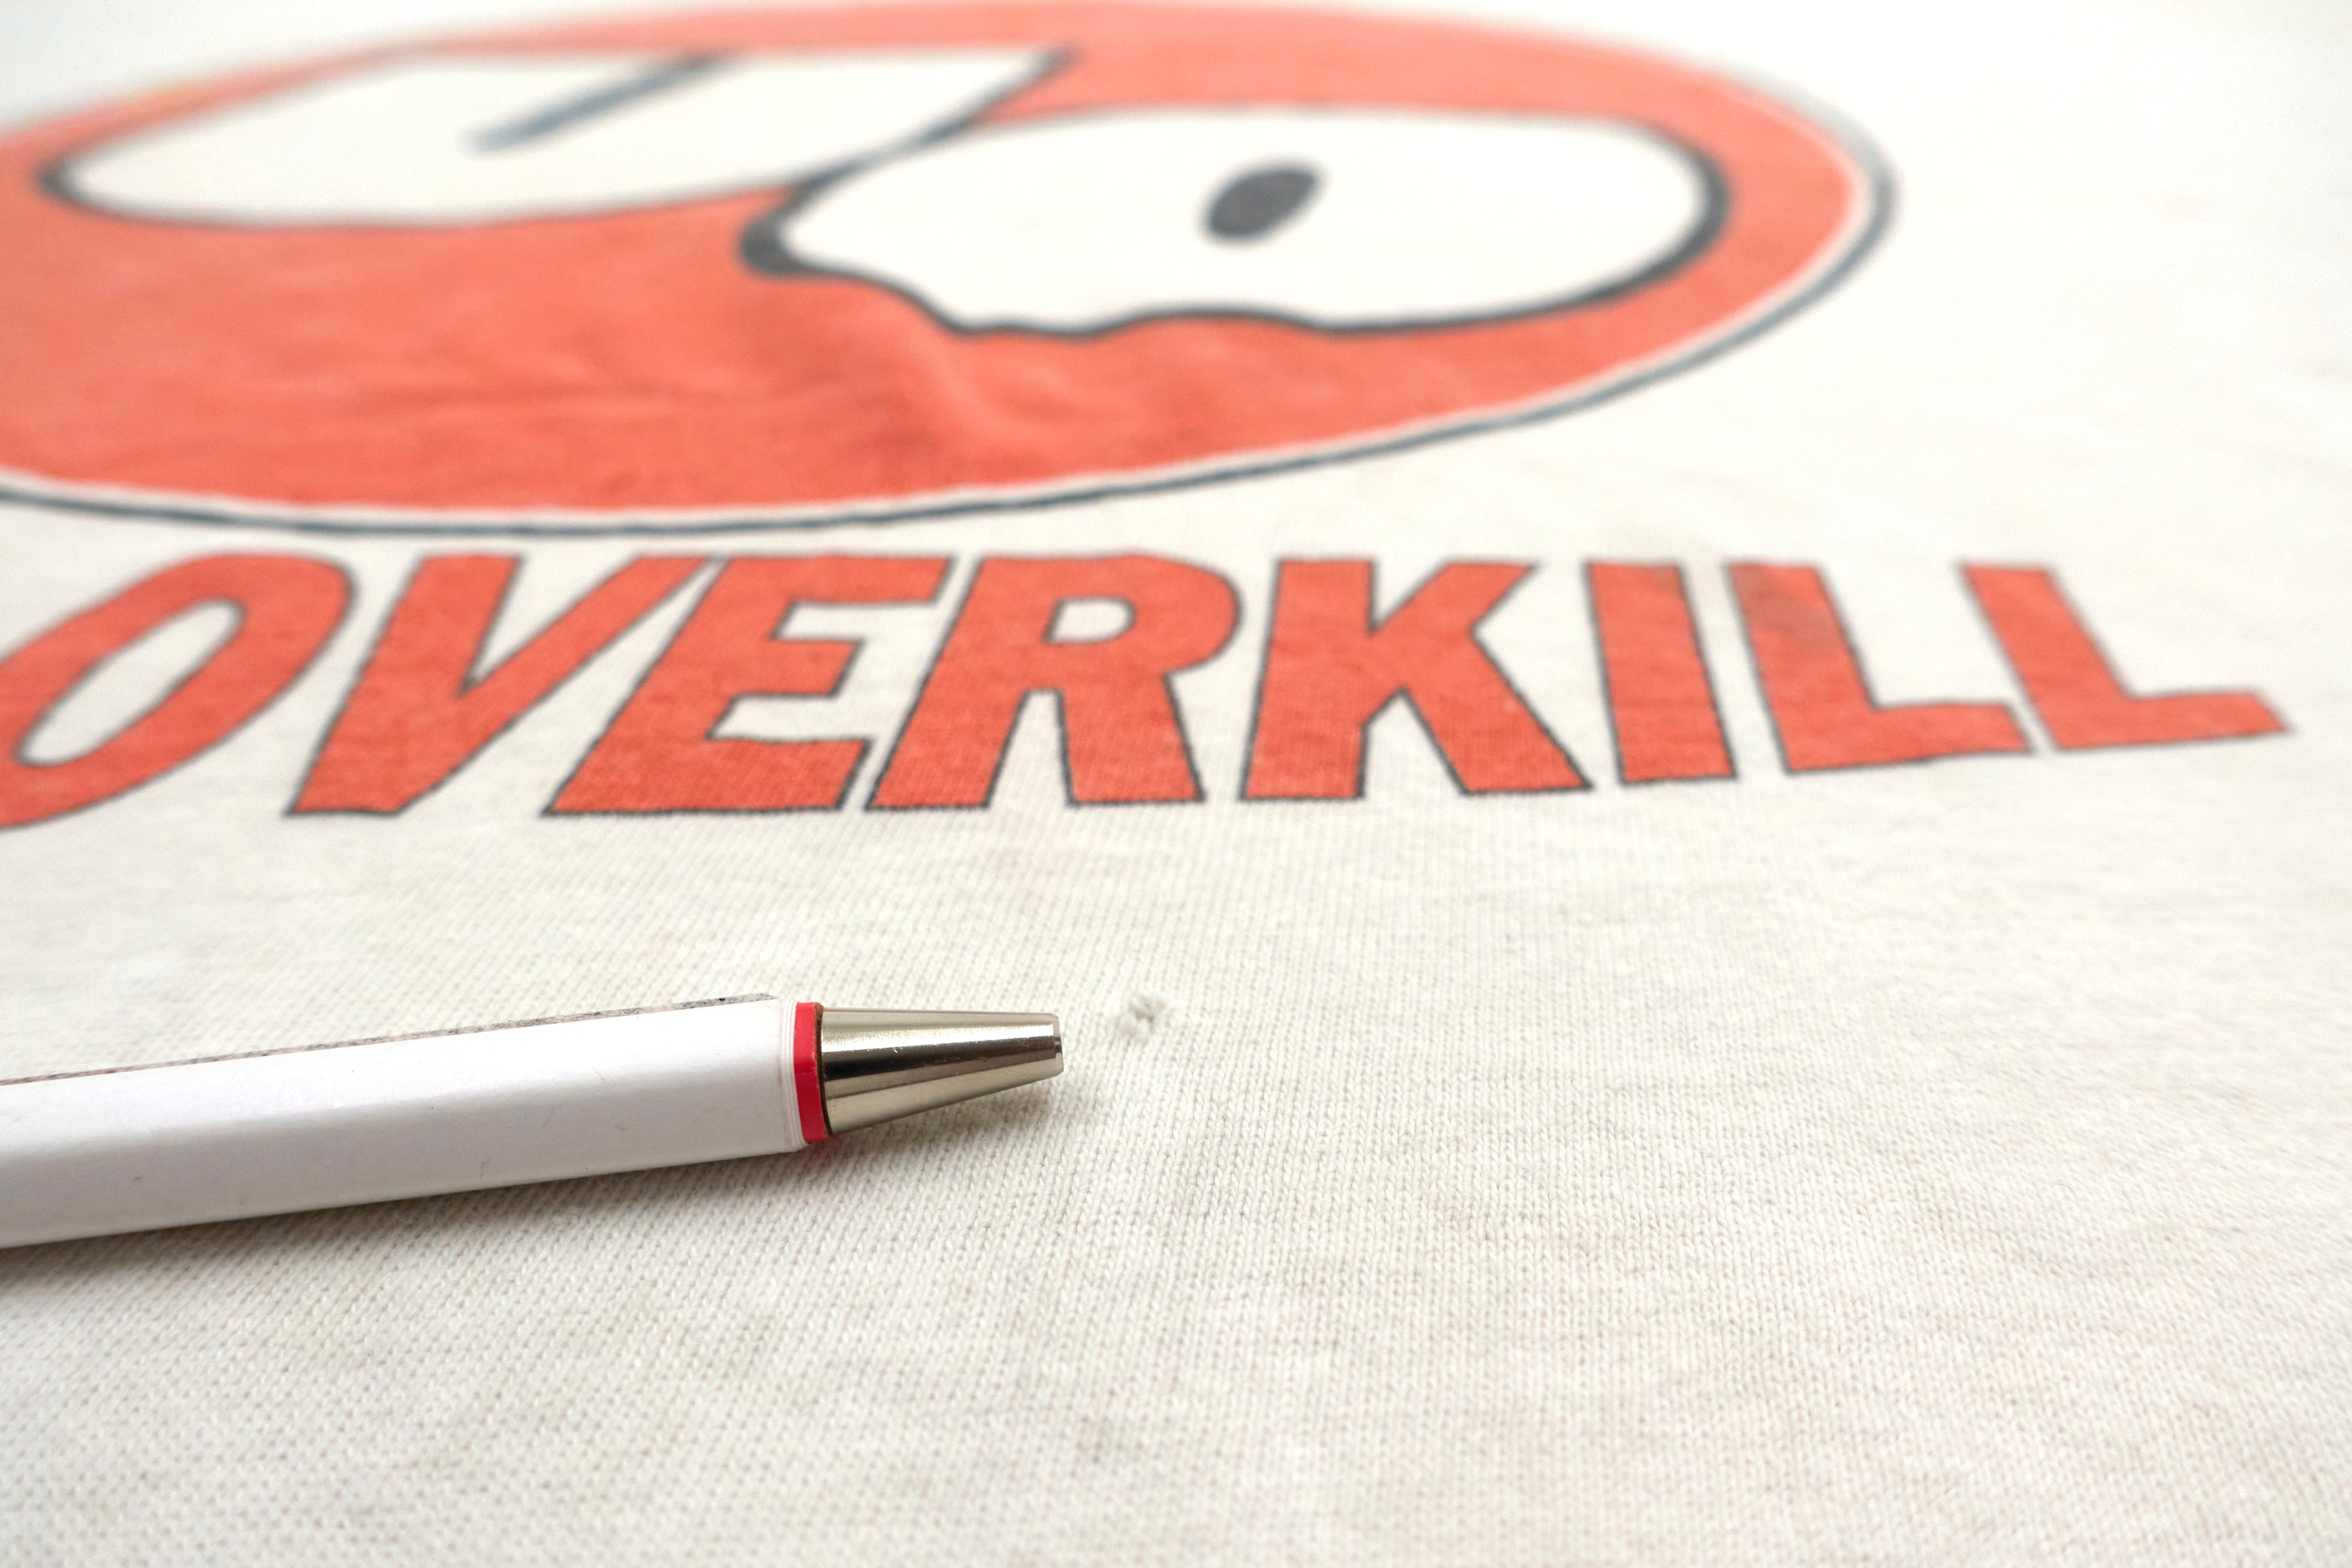 Urge Overkill - Unocal 76 Balll Logo Saturation 1993 Tour Shirt Size XL